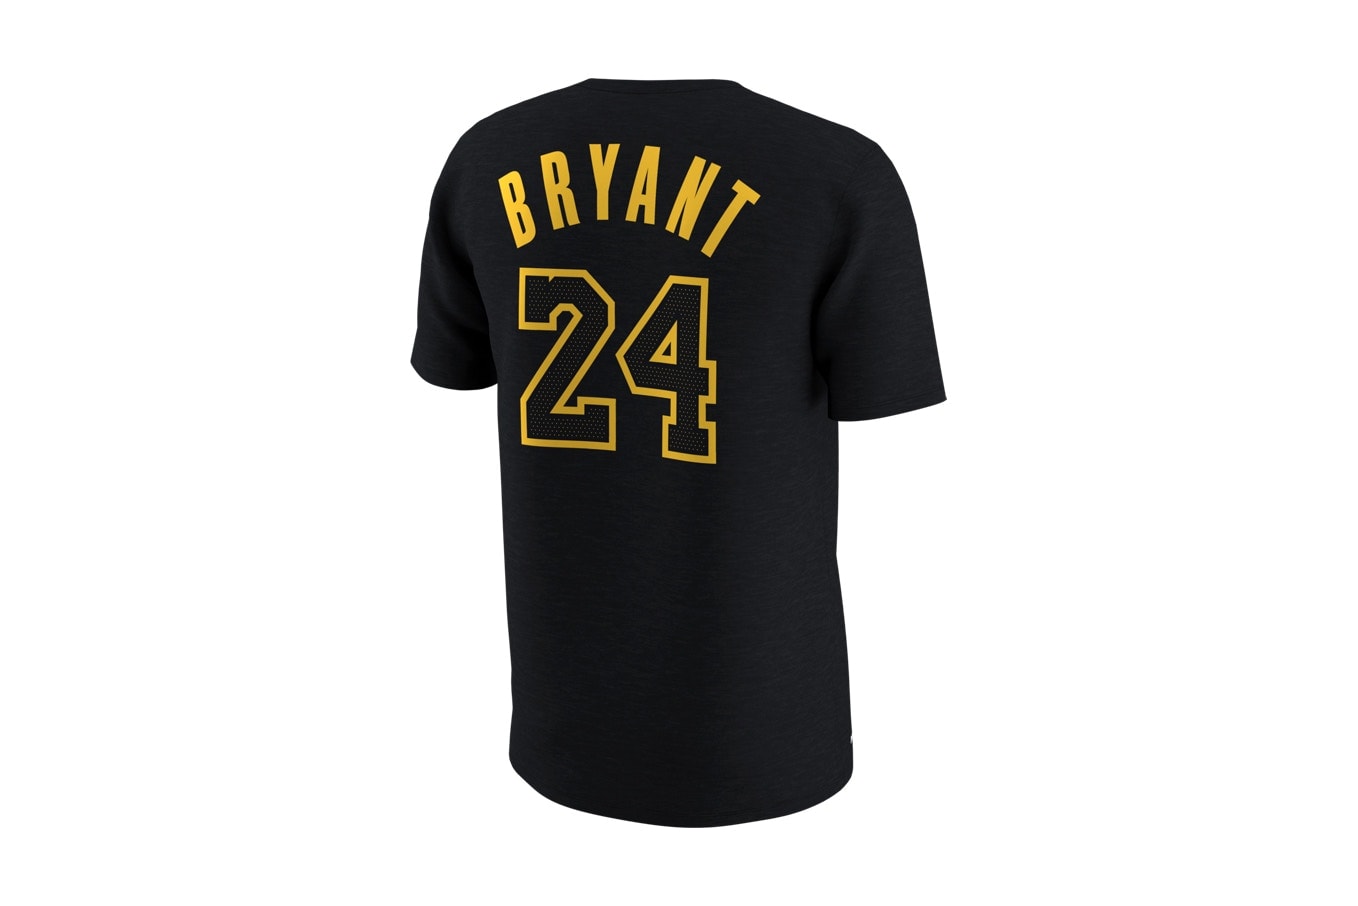 Nike 為 Kobe Bryant 球衣退役儀式打造特別版 Air Force 1 及 T-Shirt